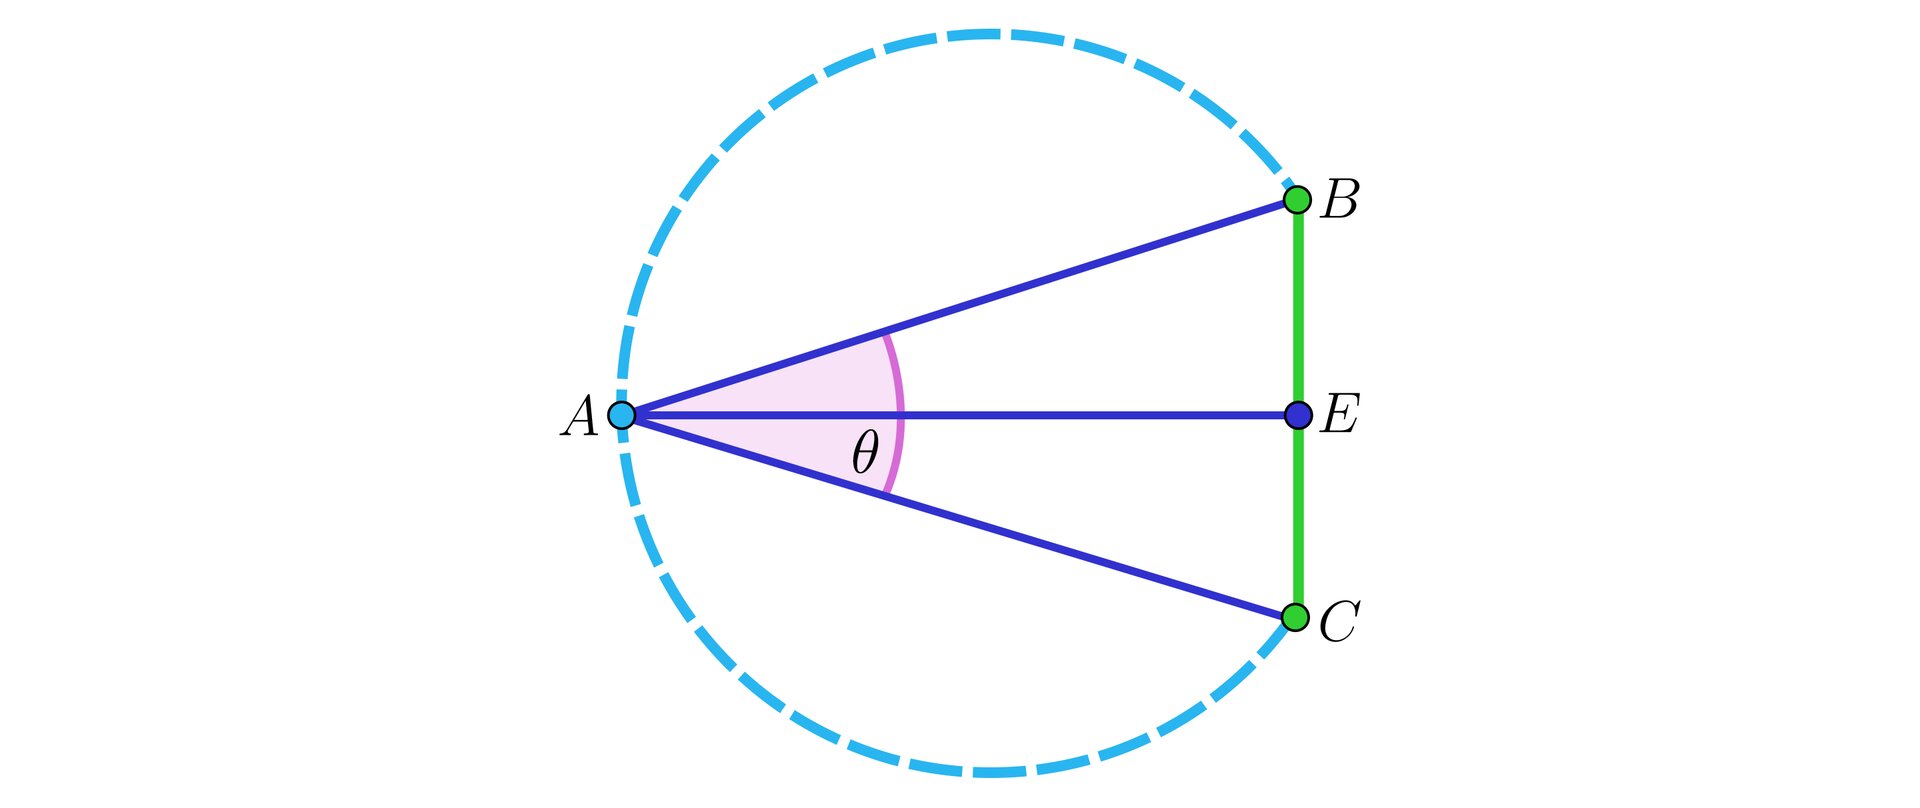 Ilustracja przedstawia cztery punkty. Po lewo narysowano punkt A, po prawo w jednej pionowej linii punkty kolejno od góry: B, E, C. Punkt A połączony jest z każdym z tych  punktów, tworząc ukośny odcinek AB, poziomy odcinek AE oraz ukośny odcinek AC.  Punkty B, E, C połączone są w pionowy odcinek. Kąt oznaczono  BAC jako θ. Na rysunku zaznaczono także linią przerywaną łuk BAC.